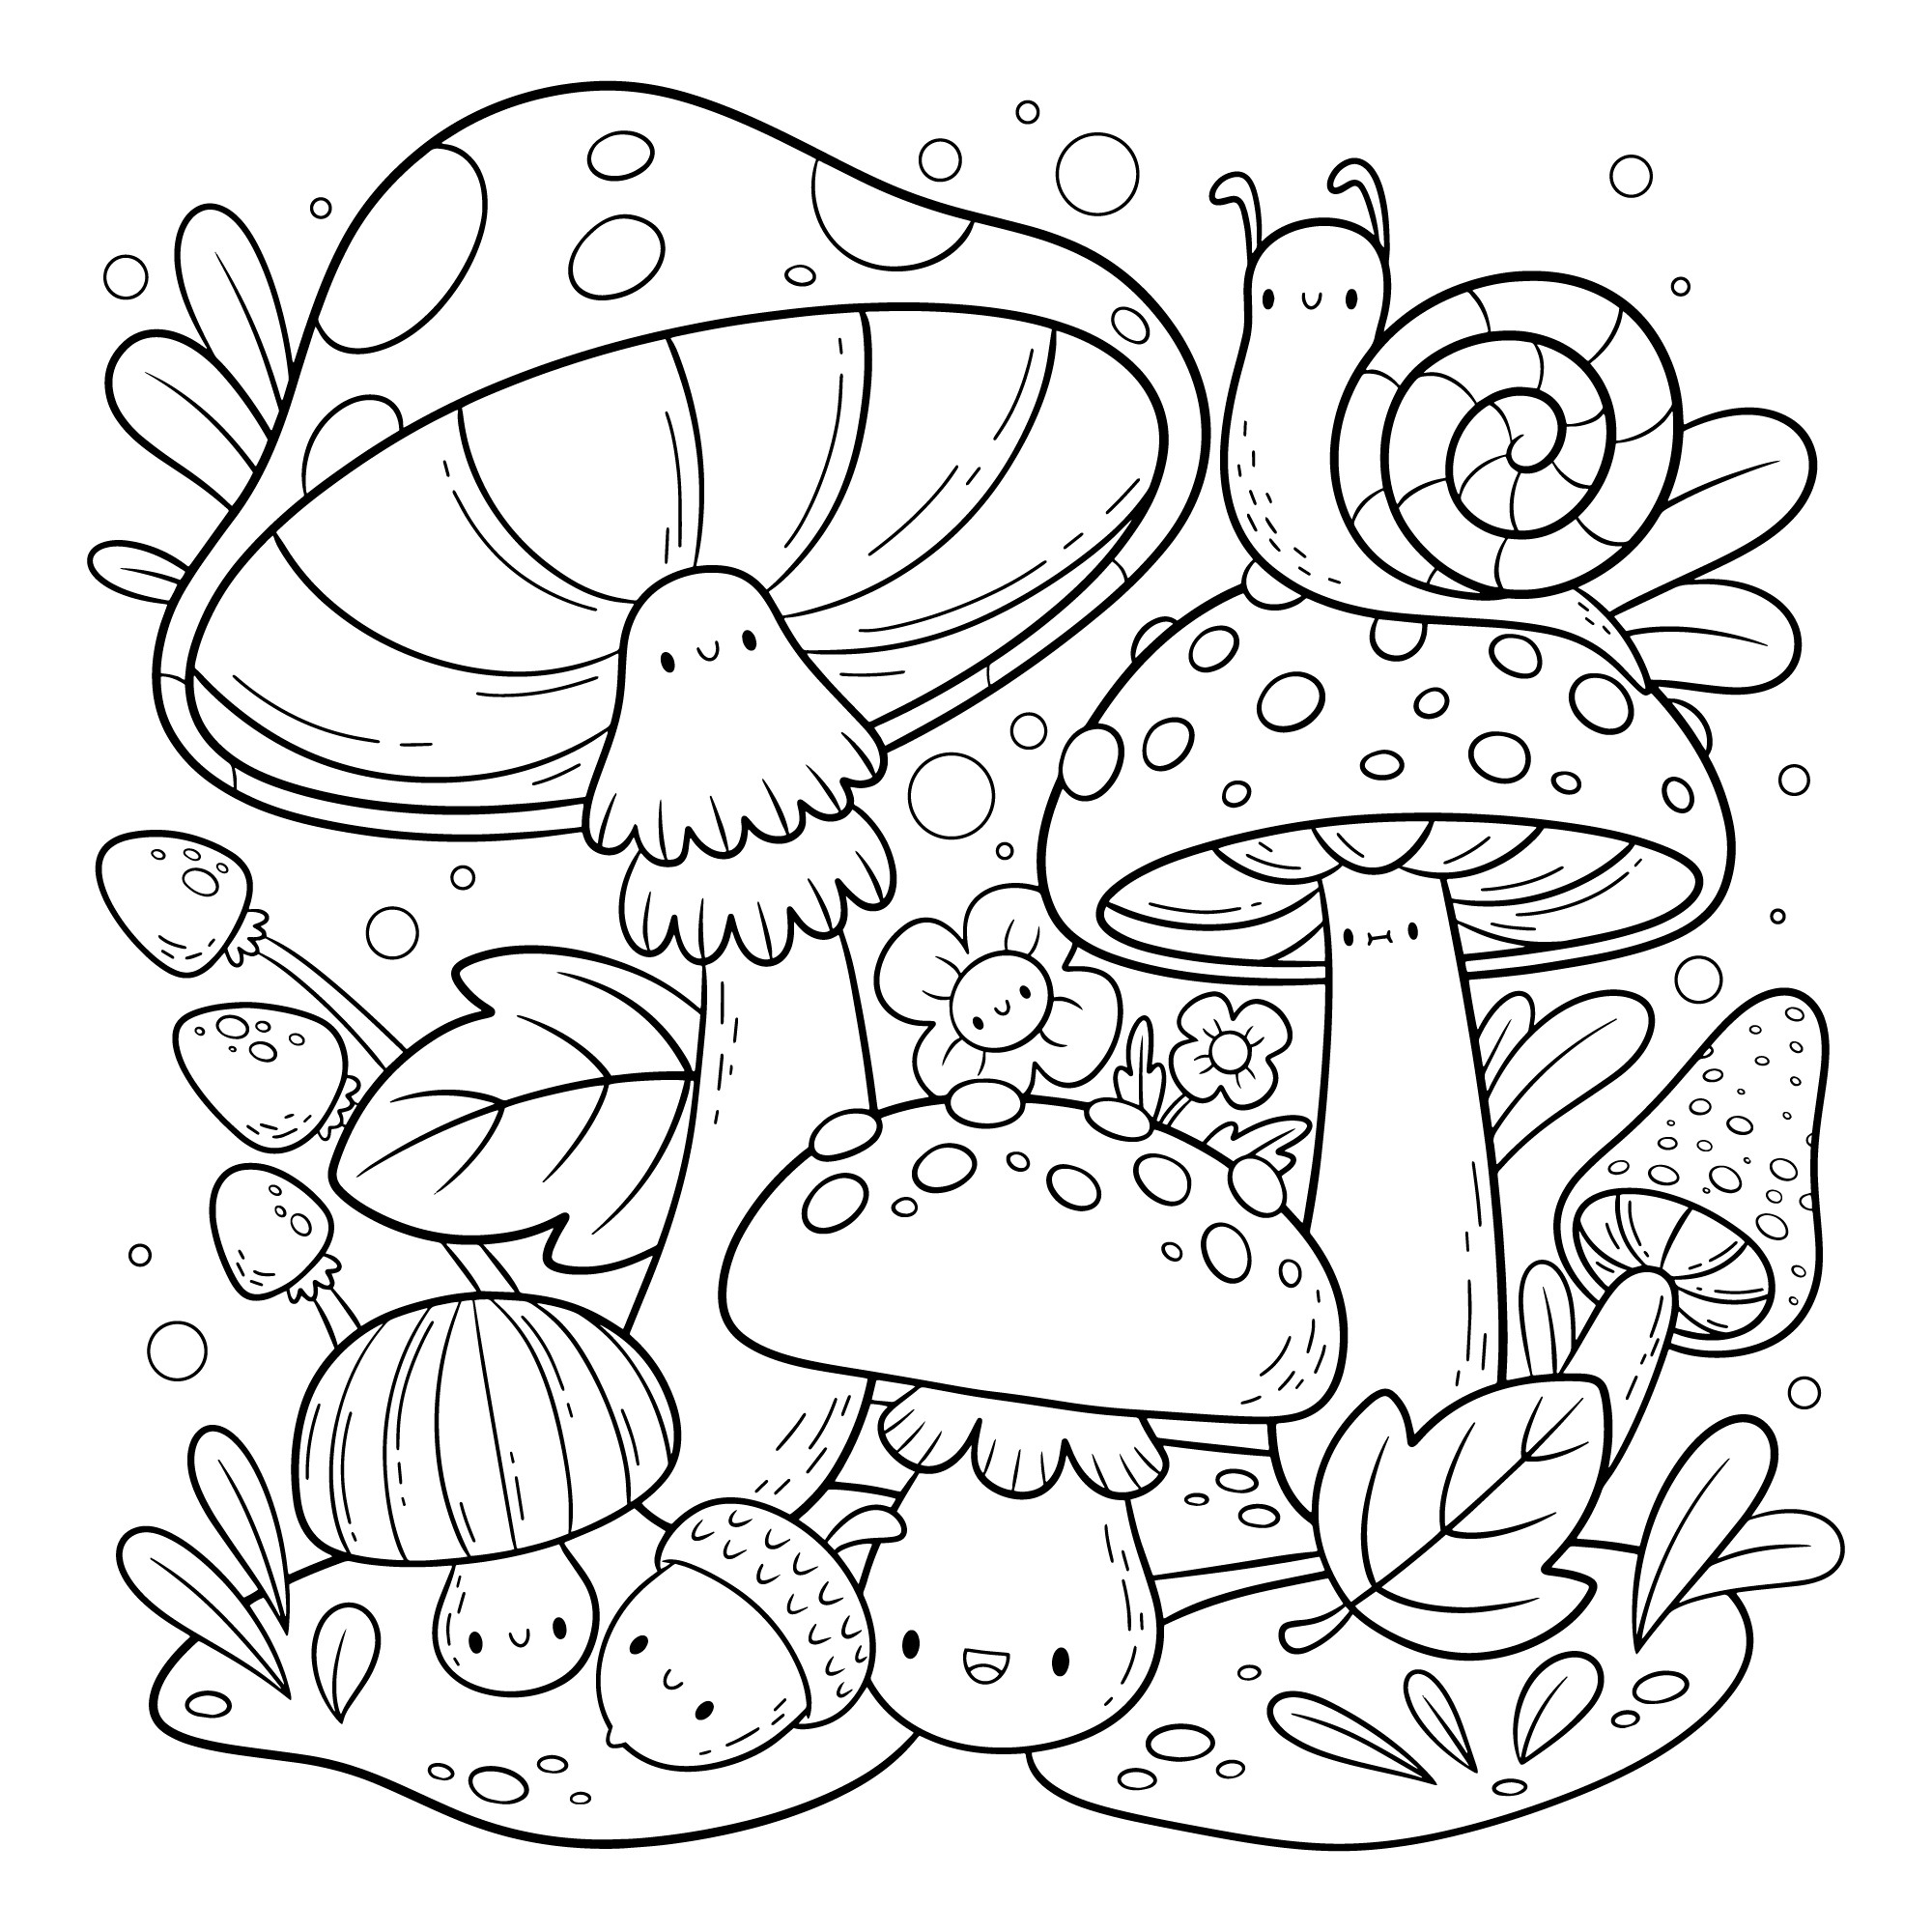 Раскраска для детей: лес грибы ягоды улитка